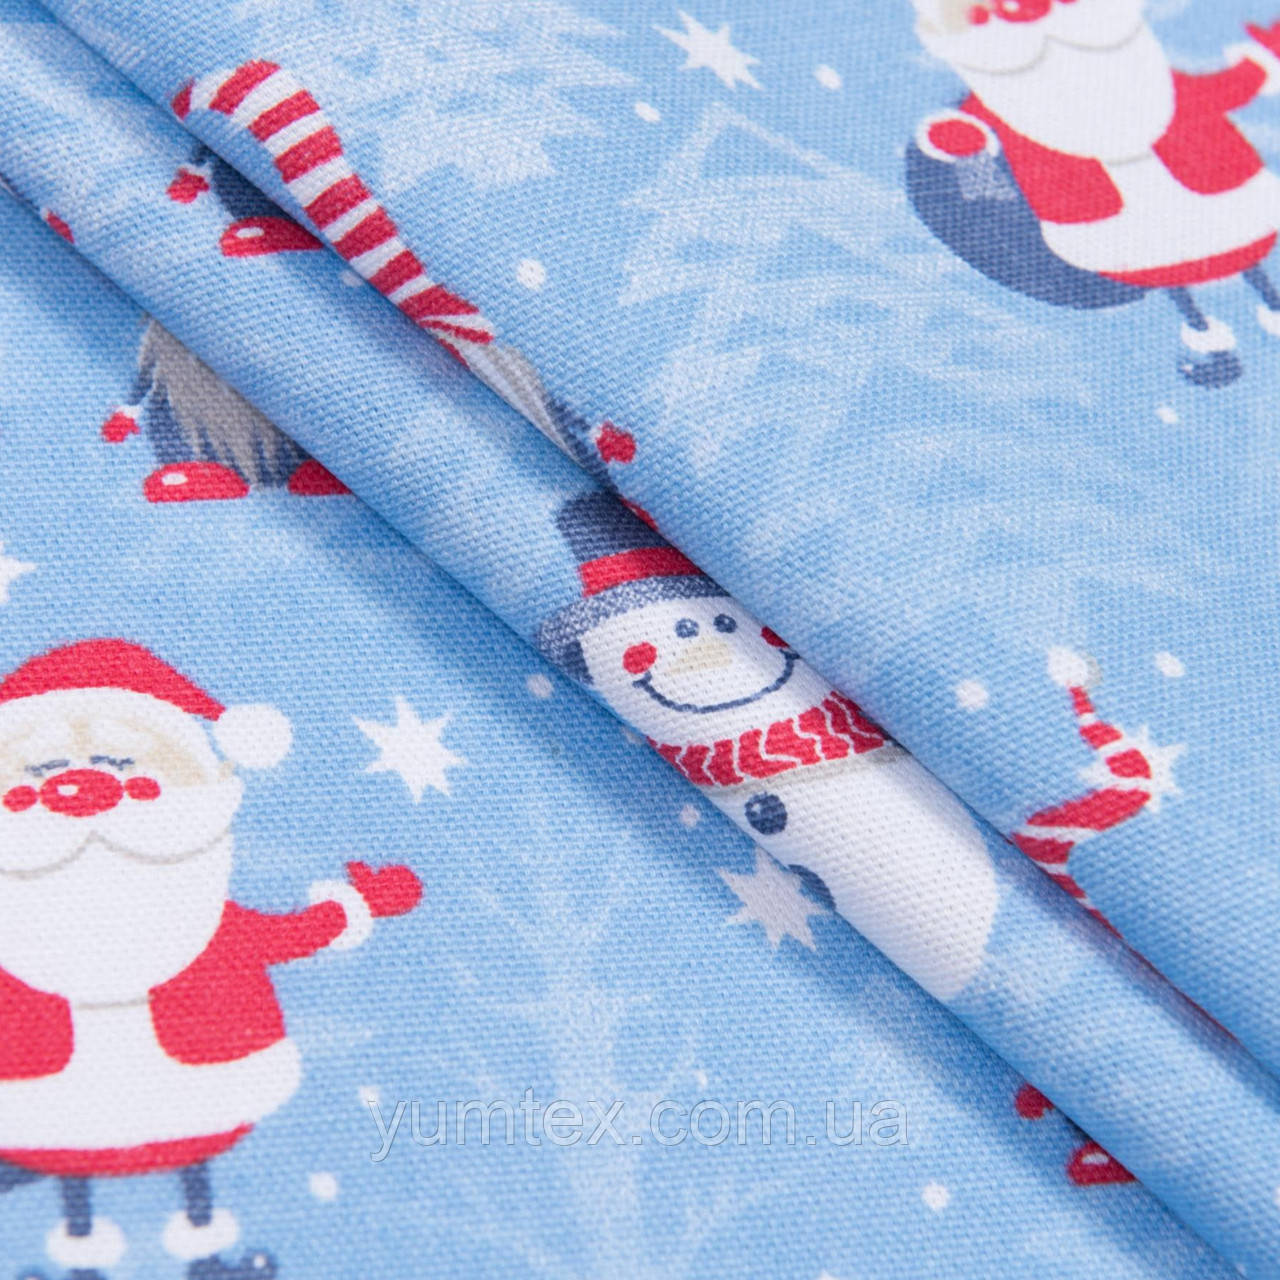 Тканина панама новорічна для столової білизни Діди Морози гноми на блакитному фоні